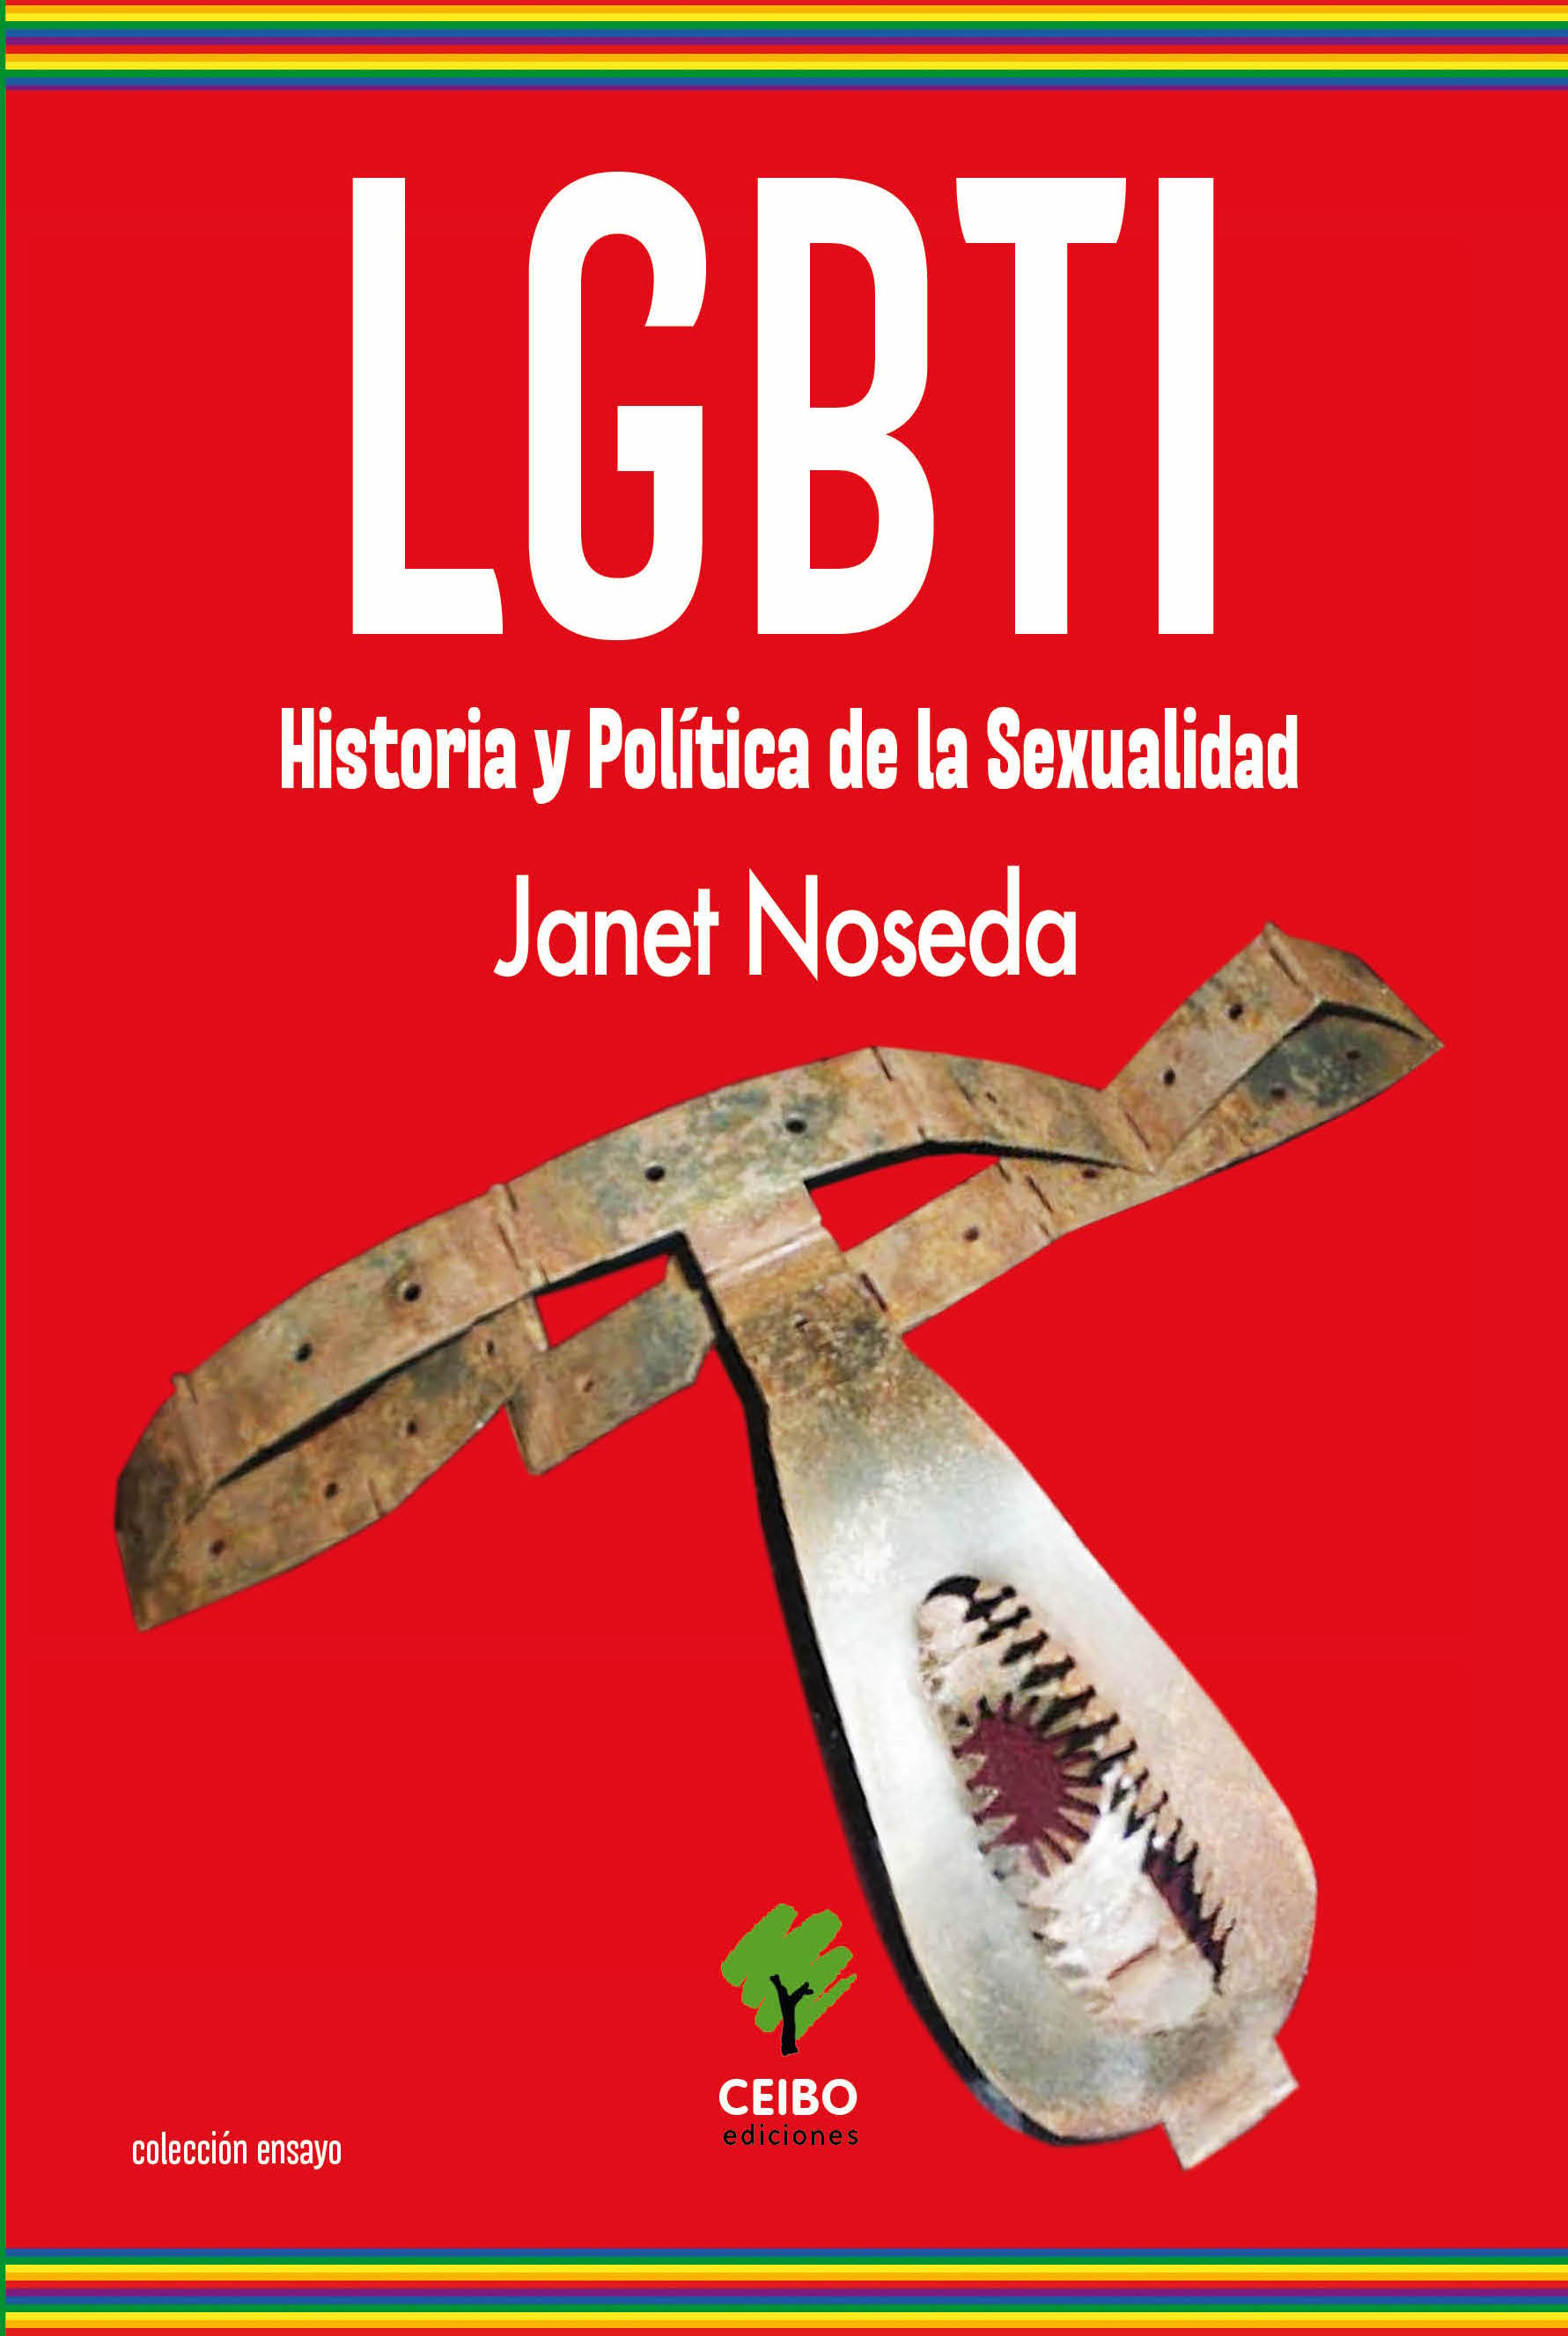 Las dimensiones de la historia y política de la sexualidad  en el primer libro de Janet Noseda